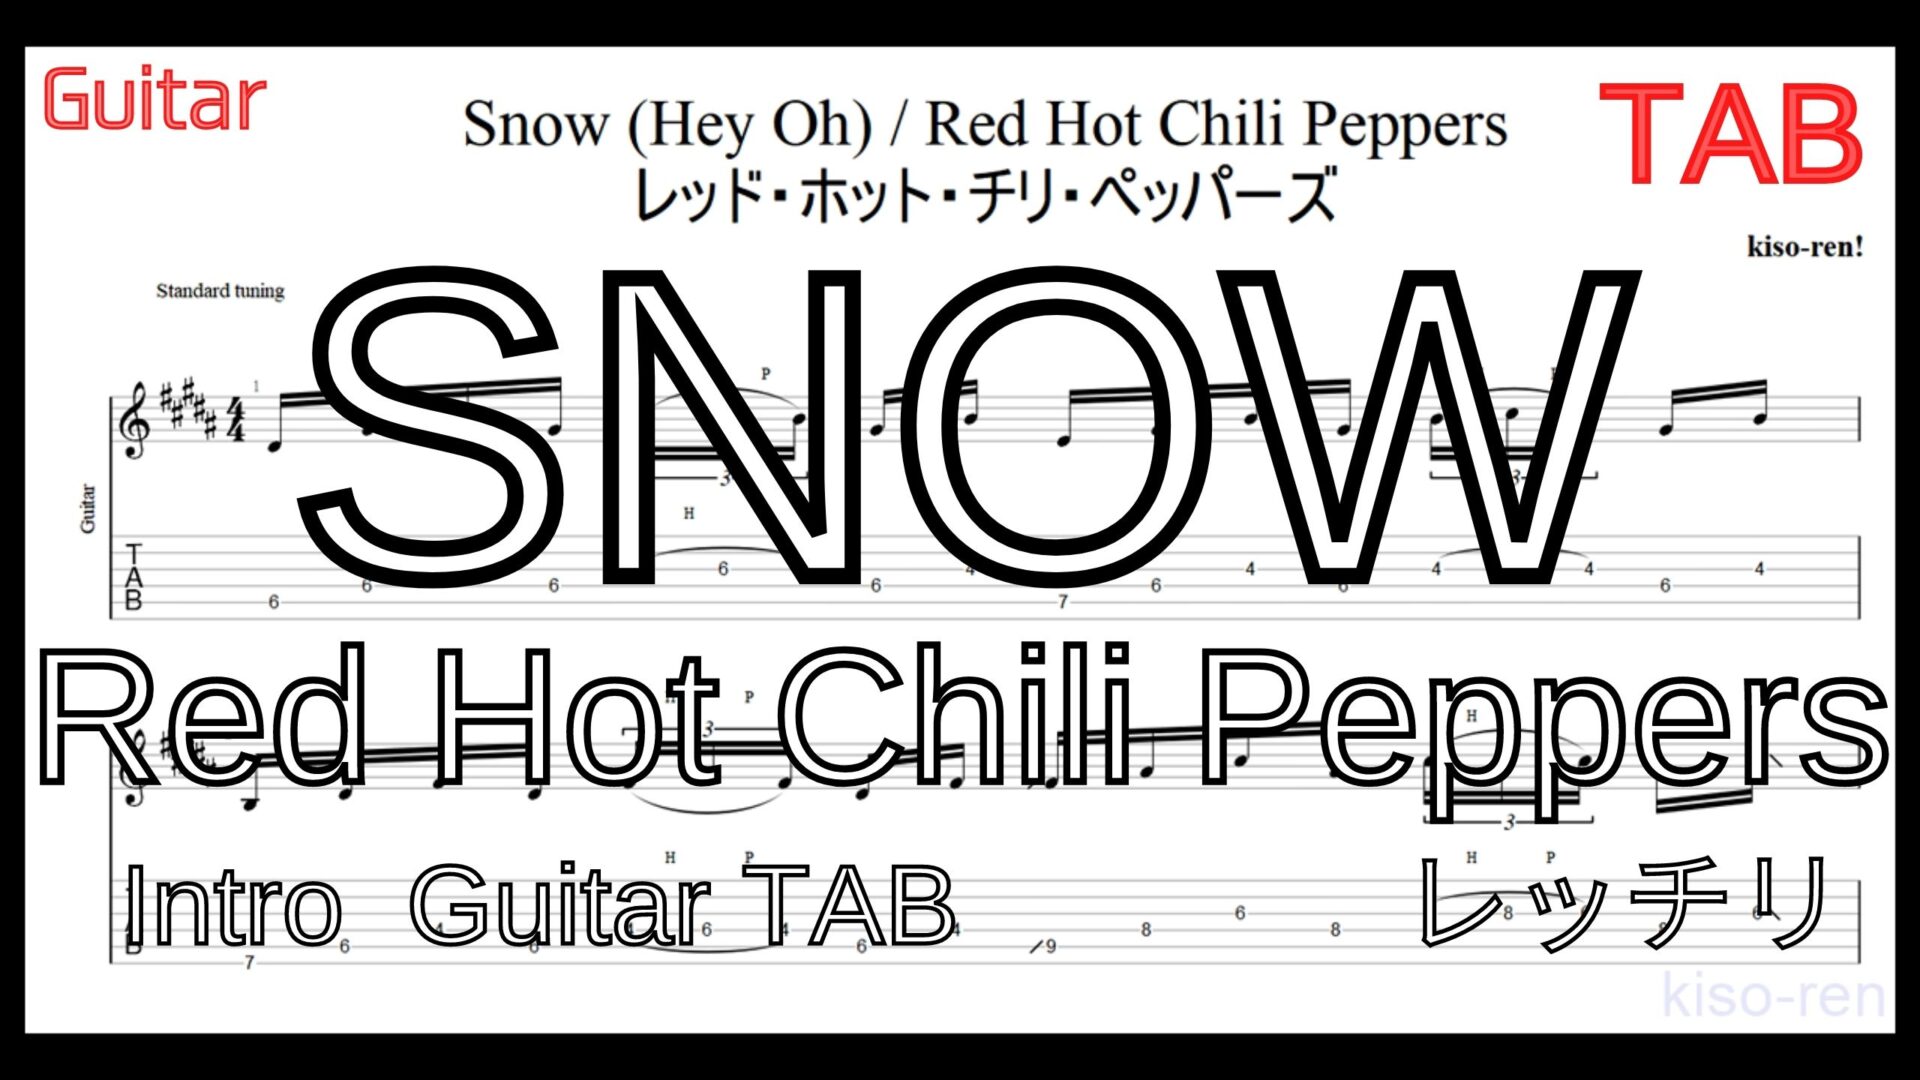 【TAB】レッチリ SNOW をギターで絶対弾ける練習方法。カッコイイけど地味に難しいイントロがピッキング練習に最適！Red Hot Chili Peppers【動画】